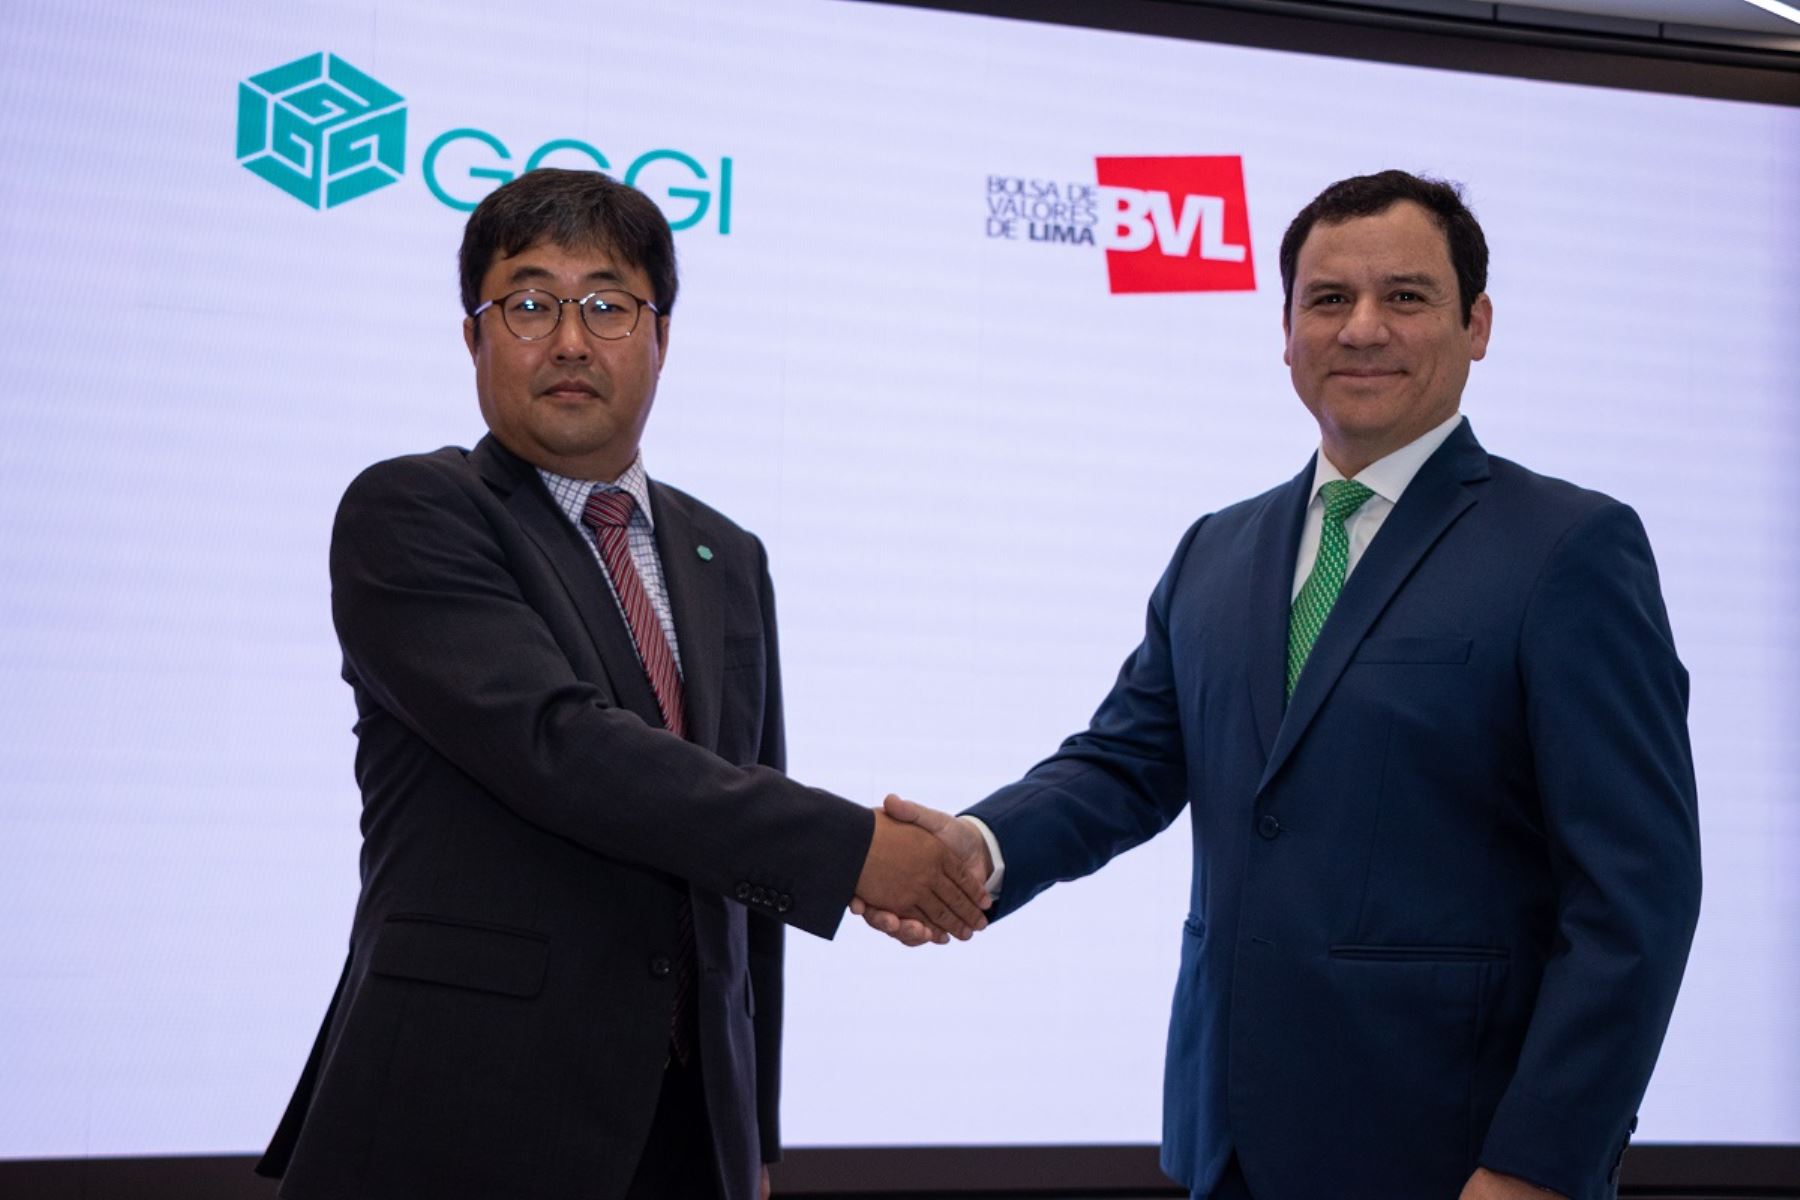 El representante de GGGI en América Latina y el Caribe, Chan Ho Park, y el gerente general de la BVL, Miguel Ángel Zapatero Alba, firman acuerdo para promover inversiones sostenibles. Foto: cortesía.